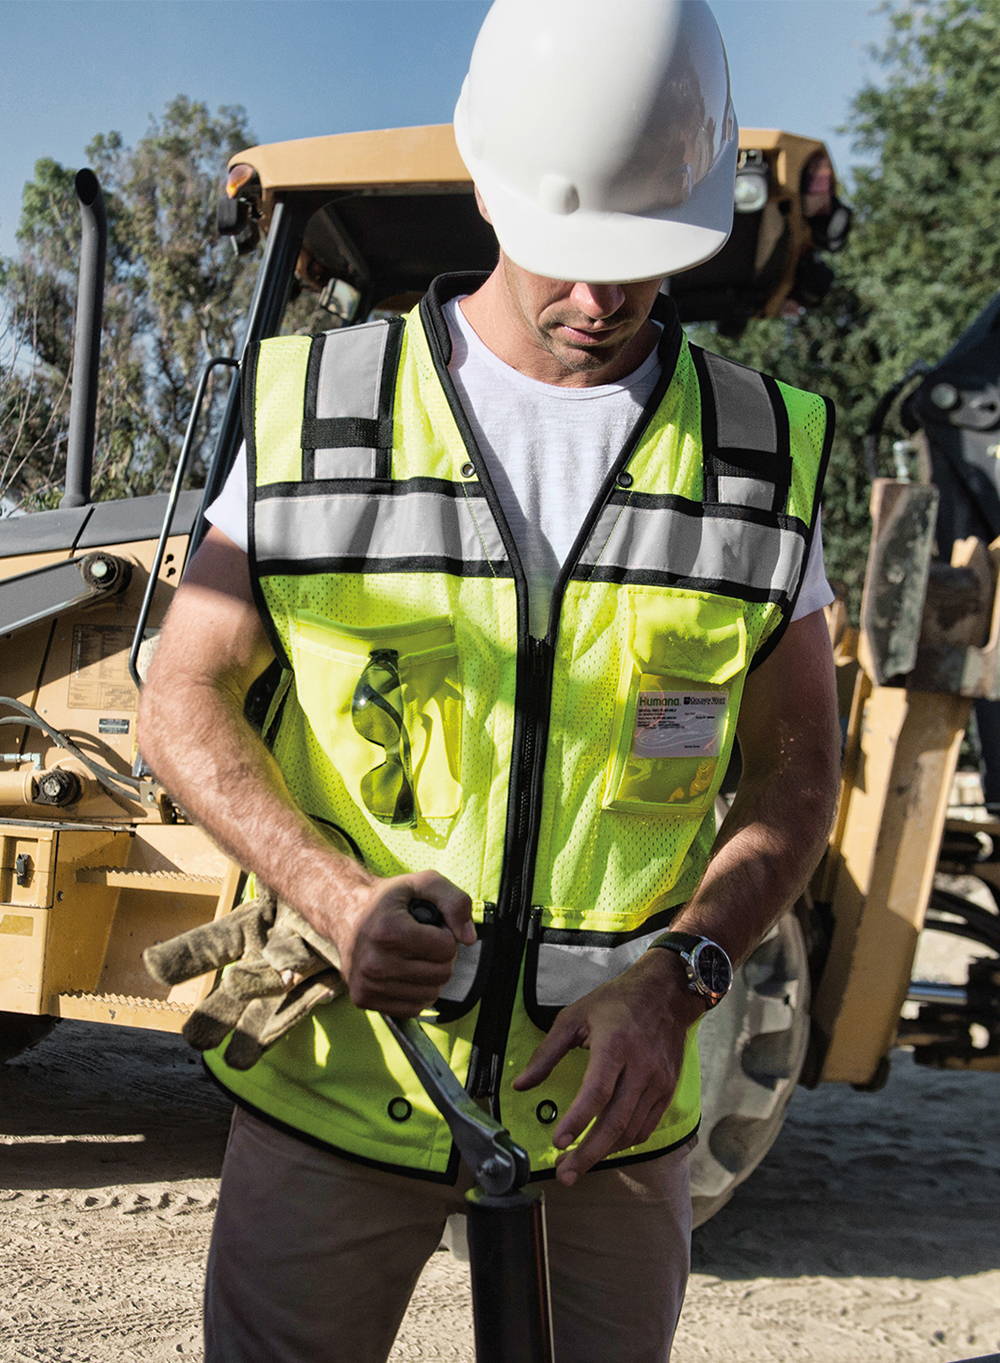 Construction worker wearing Hi-viz lime safety vest, and white hard hat.